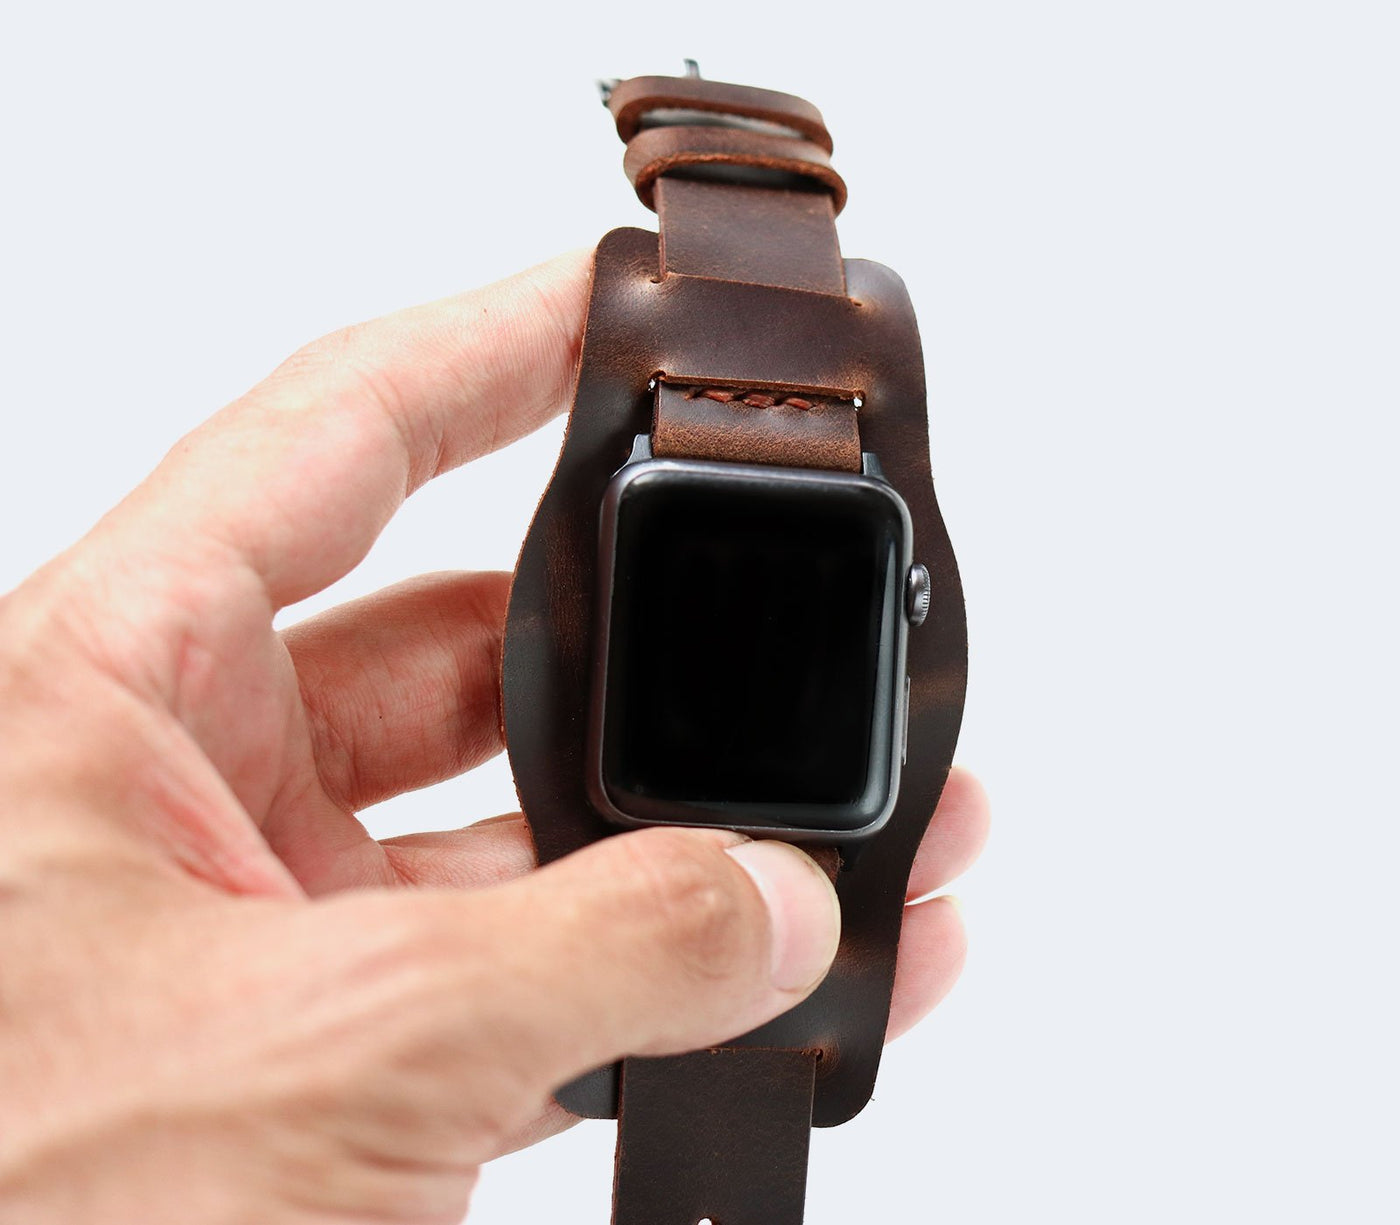 (NEW) Apple Watch Bund Strap - Antique Brown